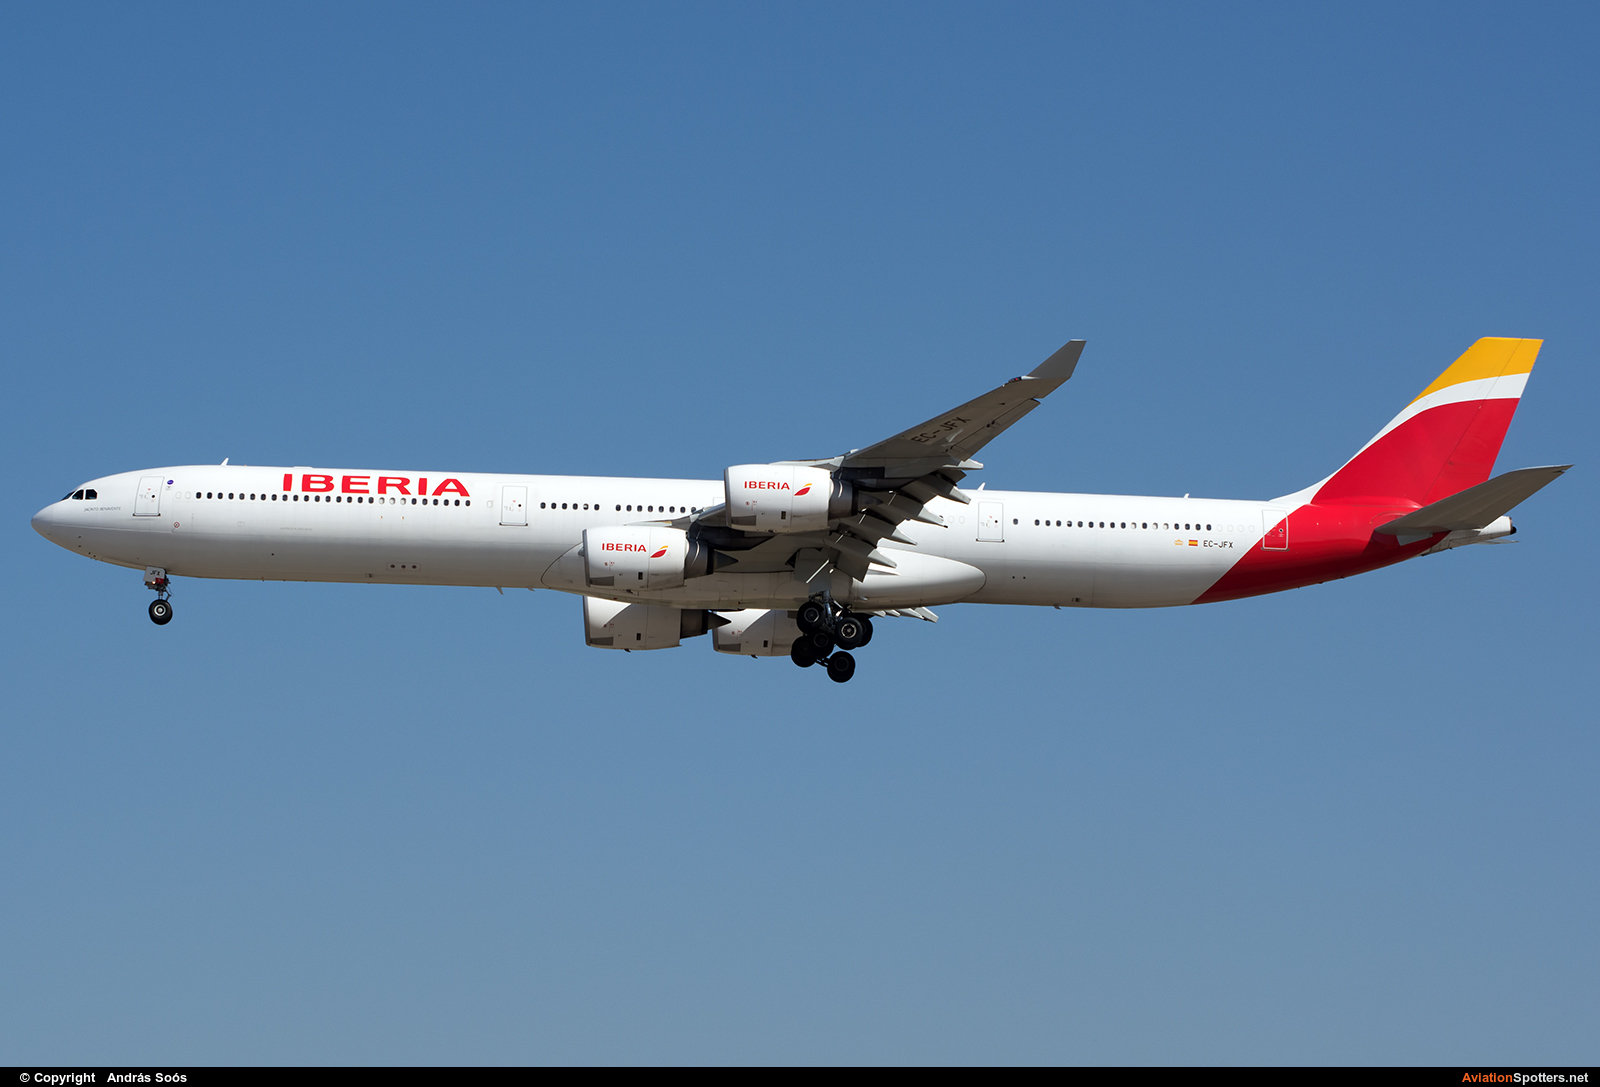 Iberia  -  A340-600  (EC-JFX) By András Soós (sas1965)